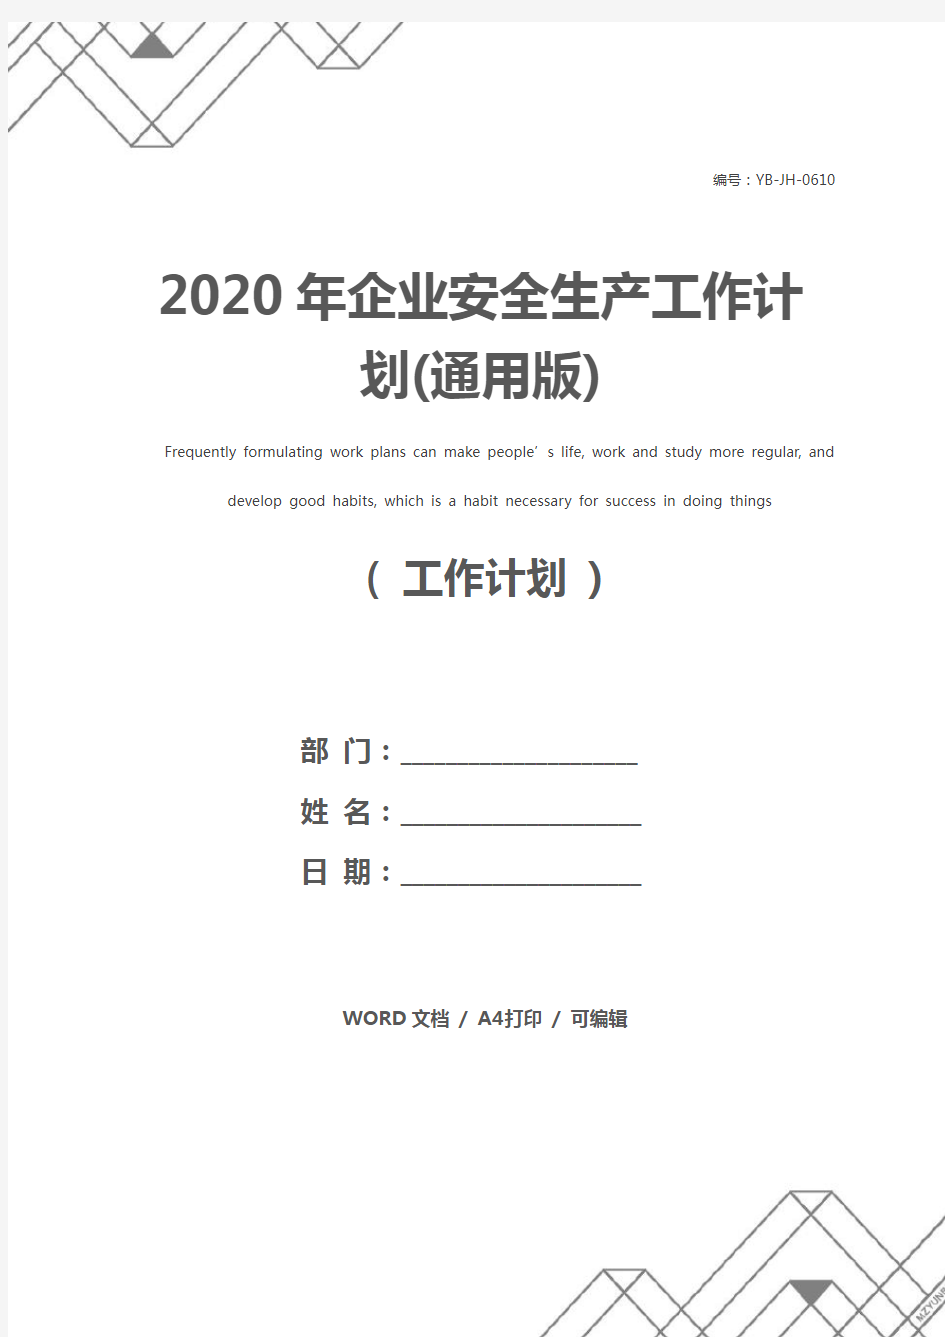 2020年企业安全生产工作计划(通用版)